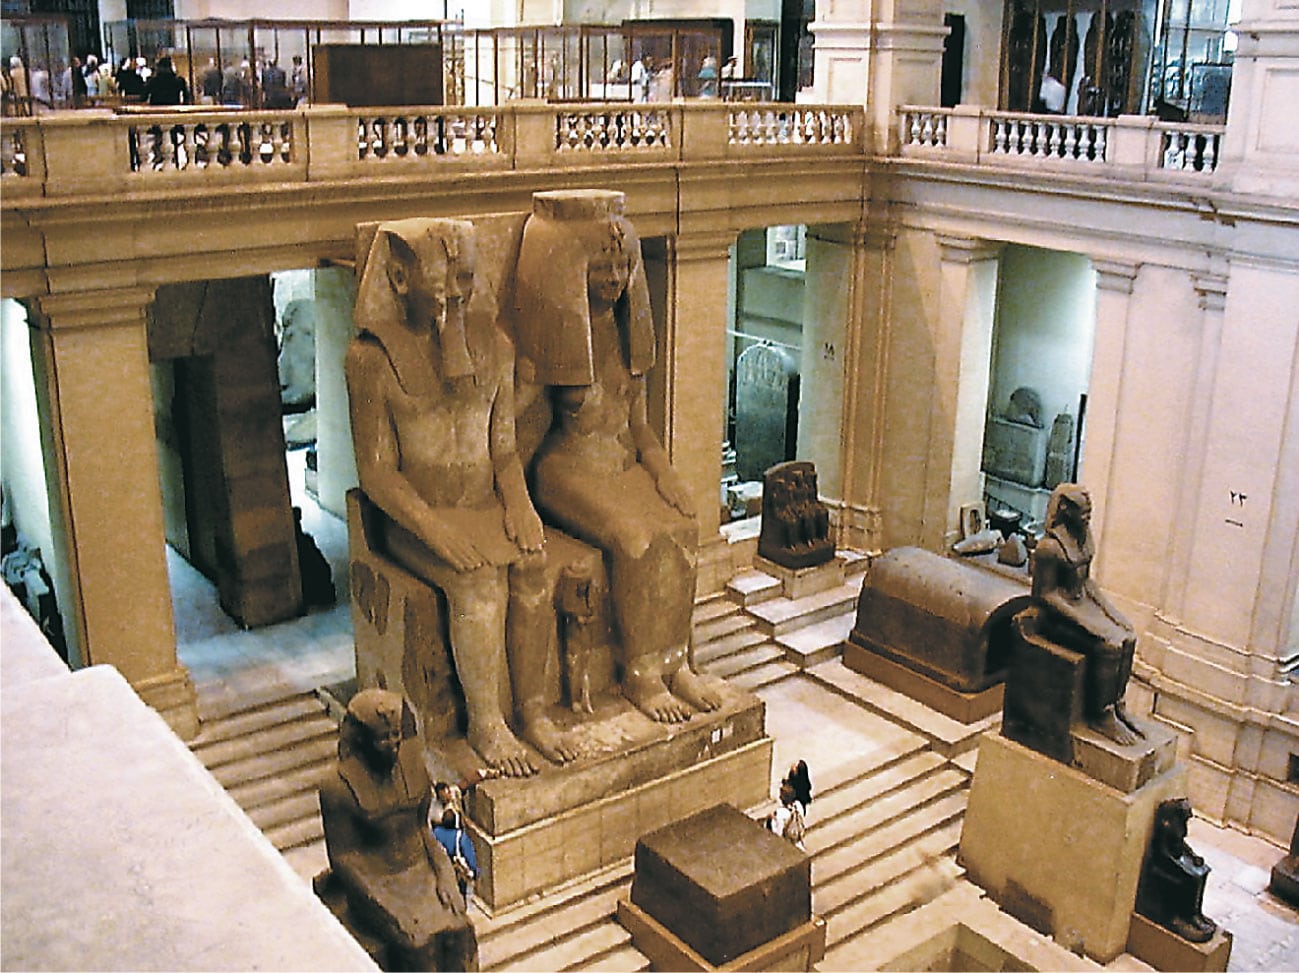 السياحة فى معبد المتحف المصري مصر | معبد المتحف المصرى فى مصر